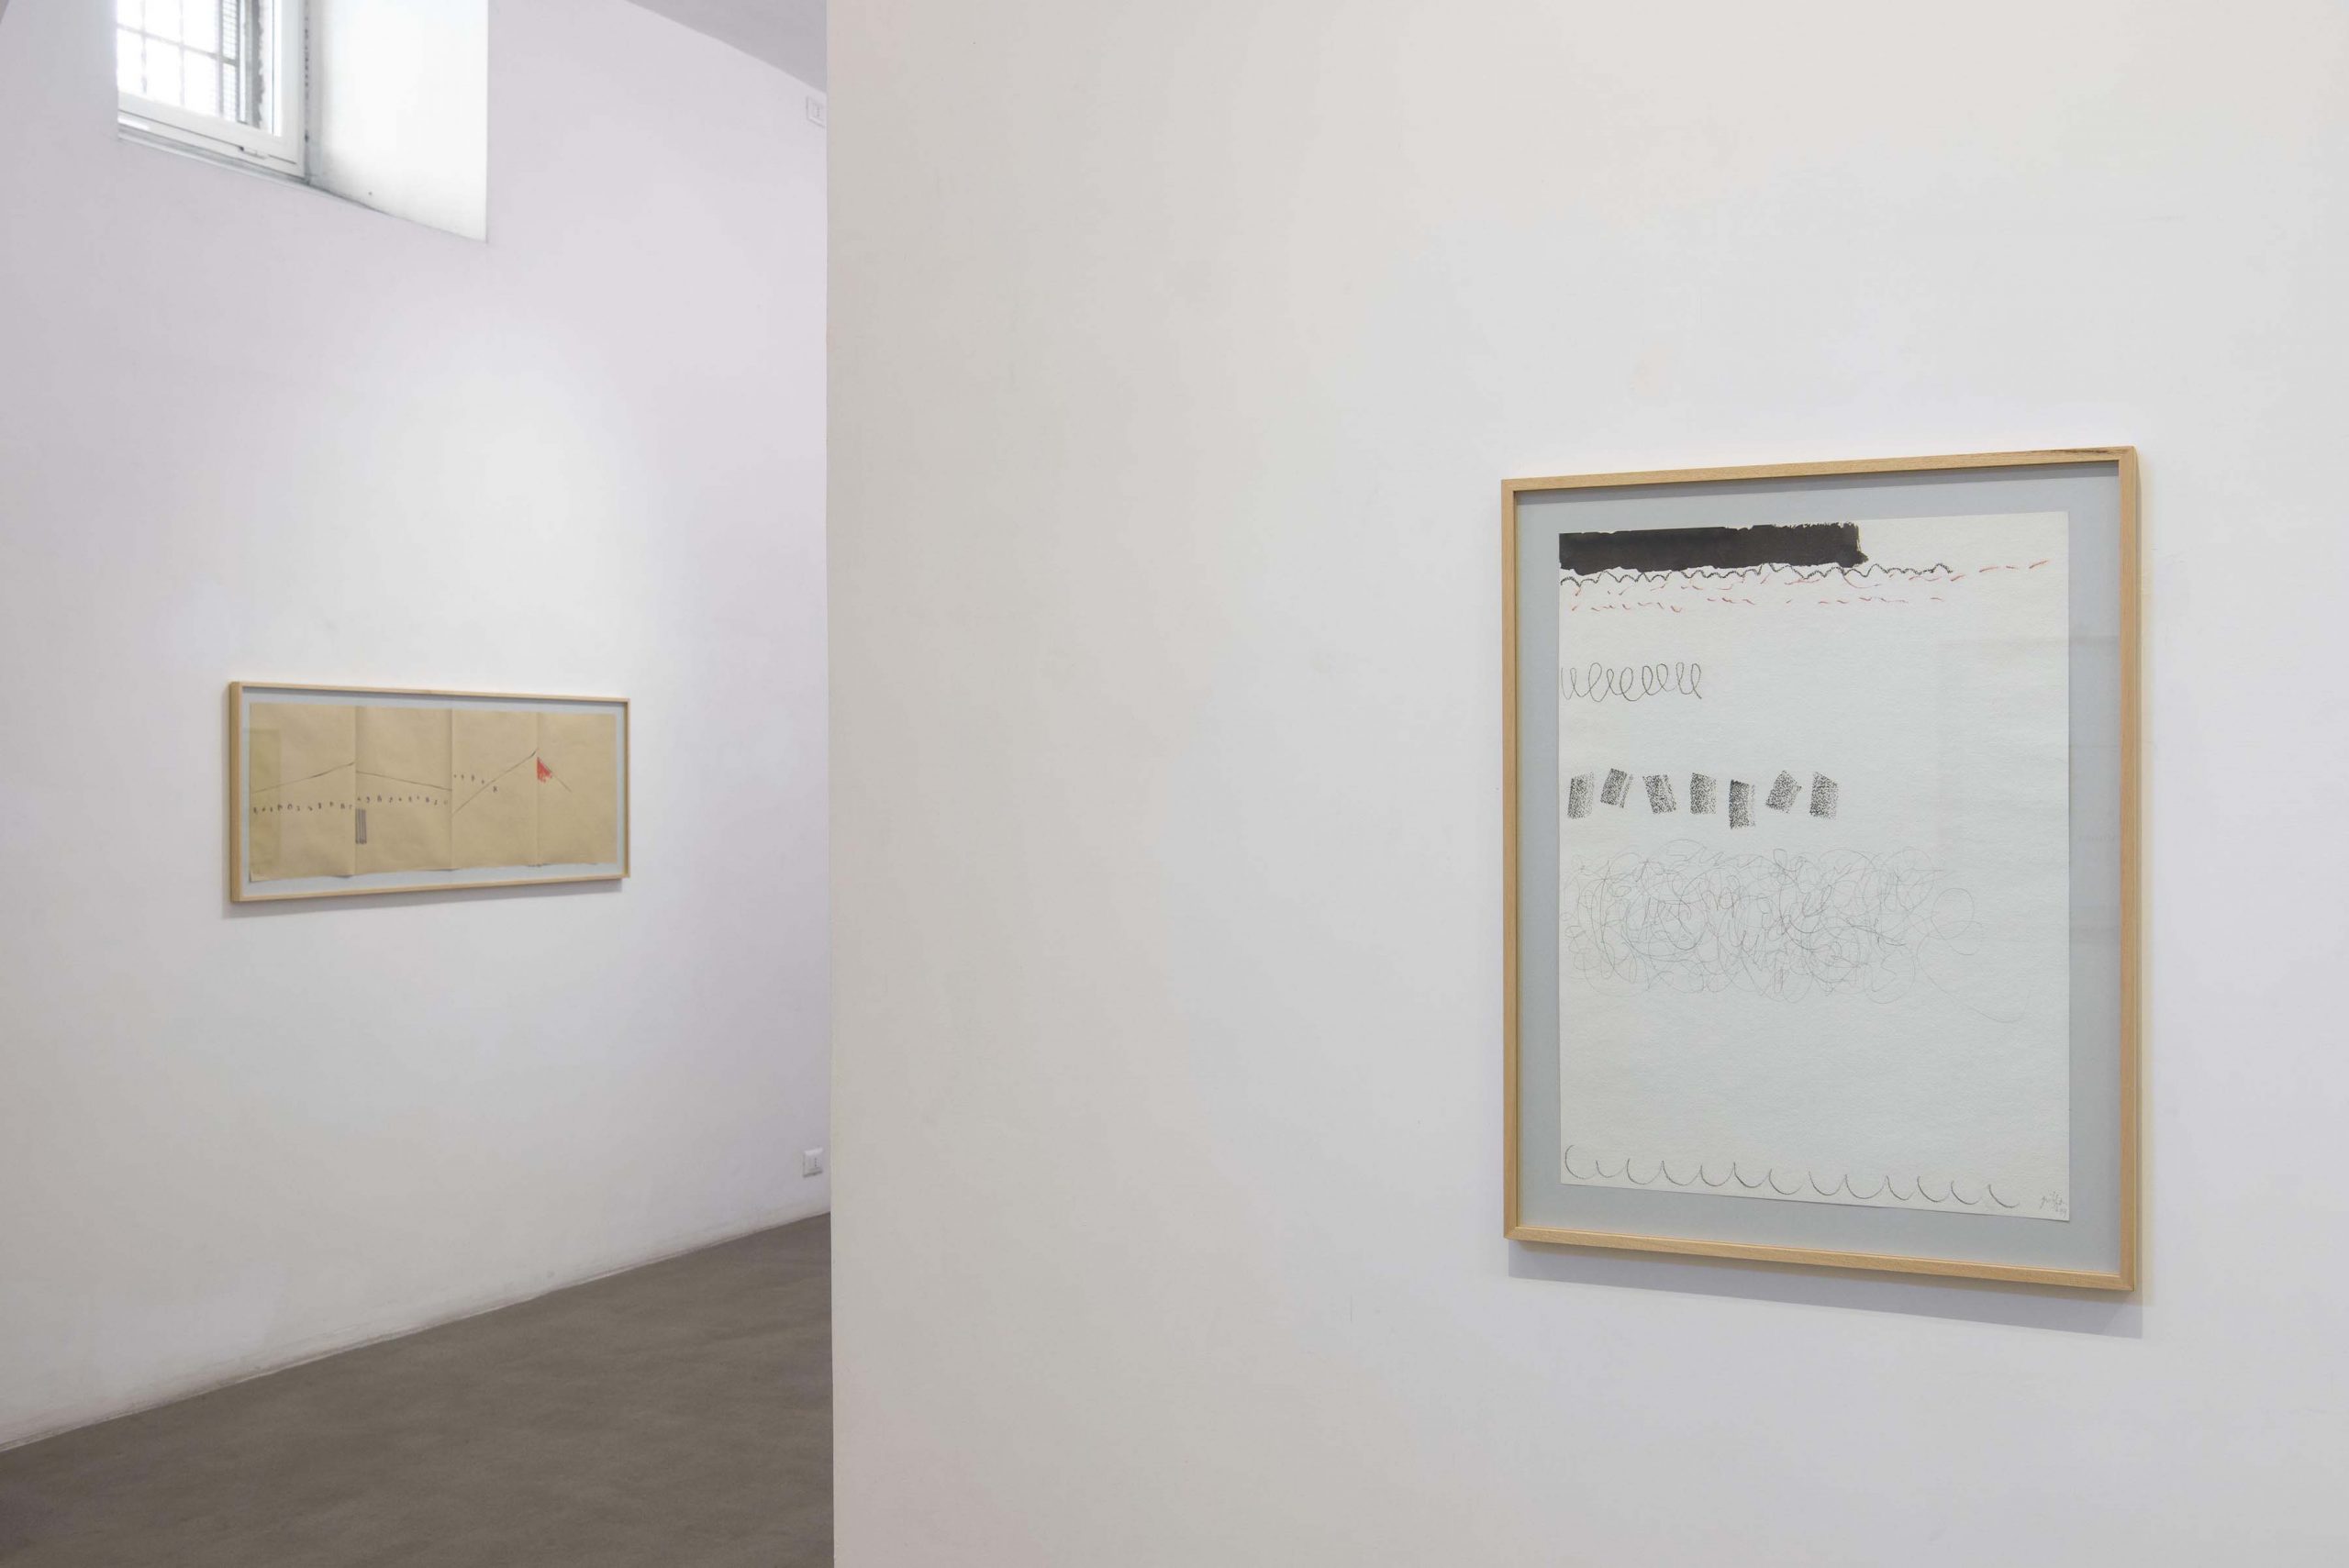 14. Giorgio Griffa: Works on Paper
Installation view, Roma, 2014, foto Giorgio Benni